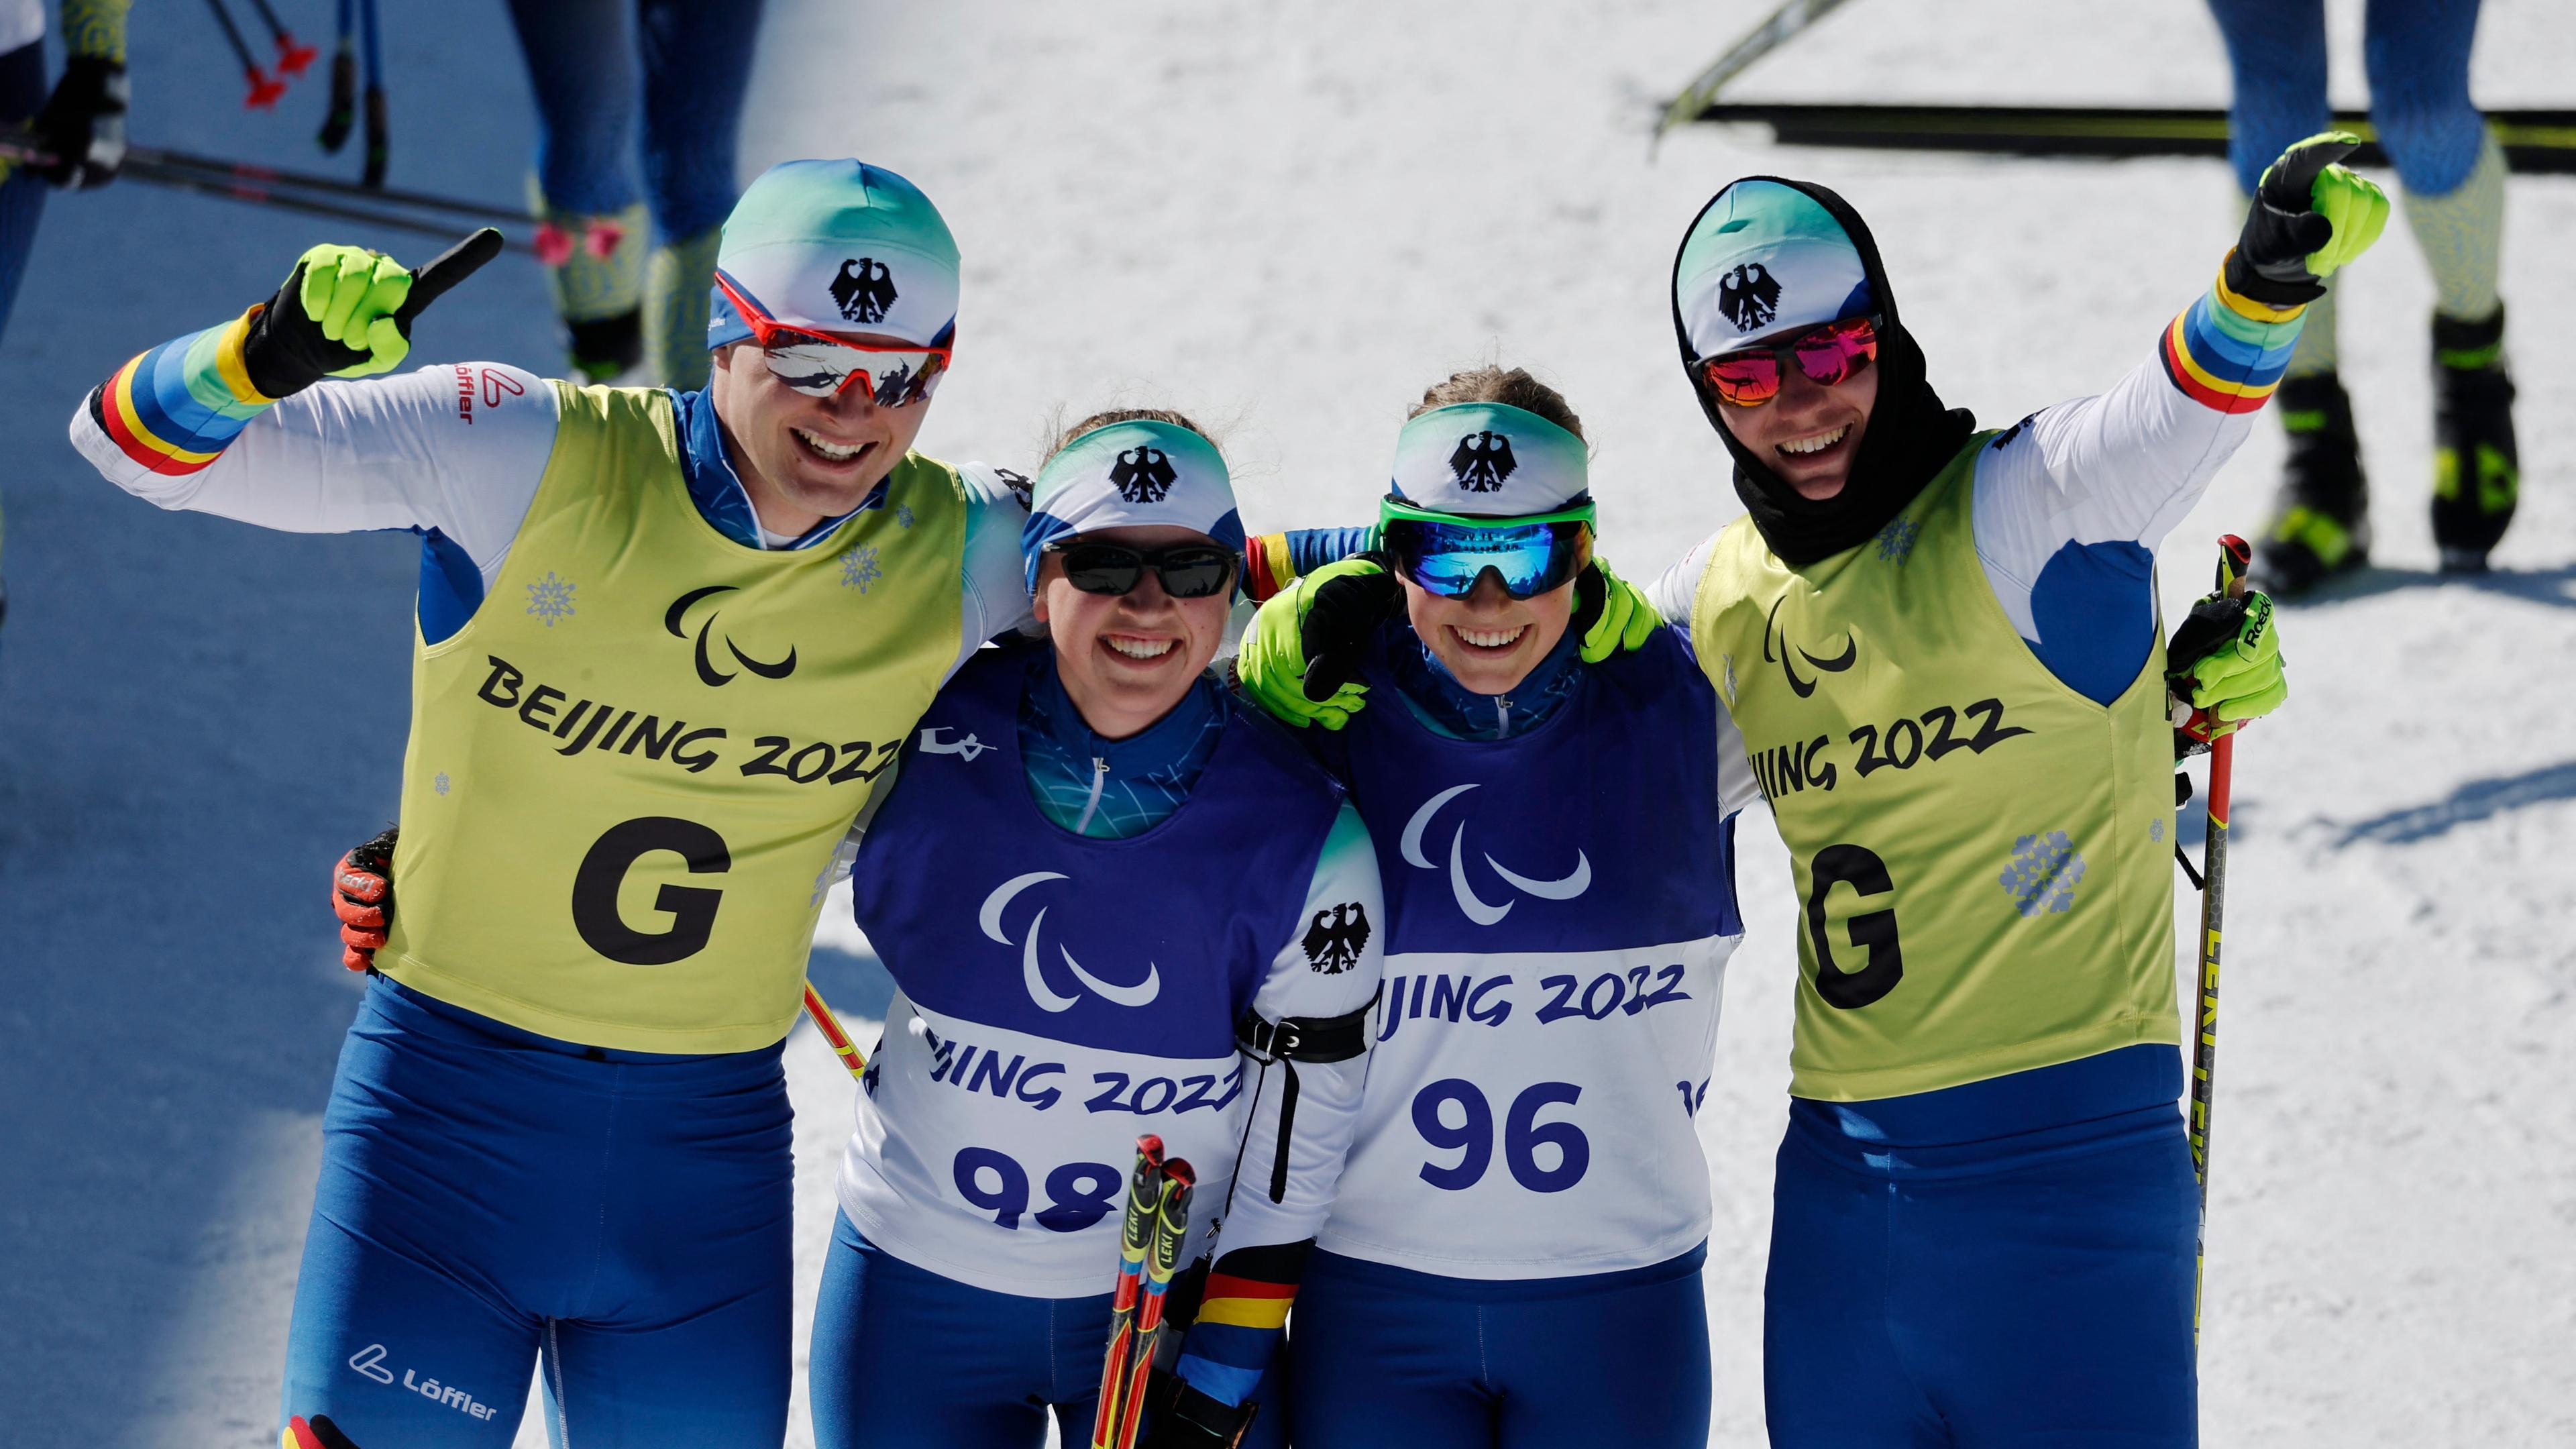 Strecker, Walter, Kazmaier und Baumann - jubeln über ihre Medaillen bei den Paralympics 2022